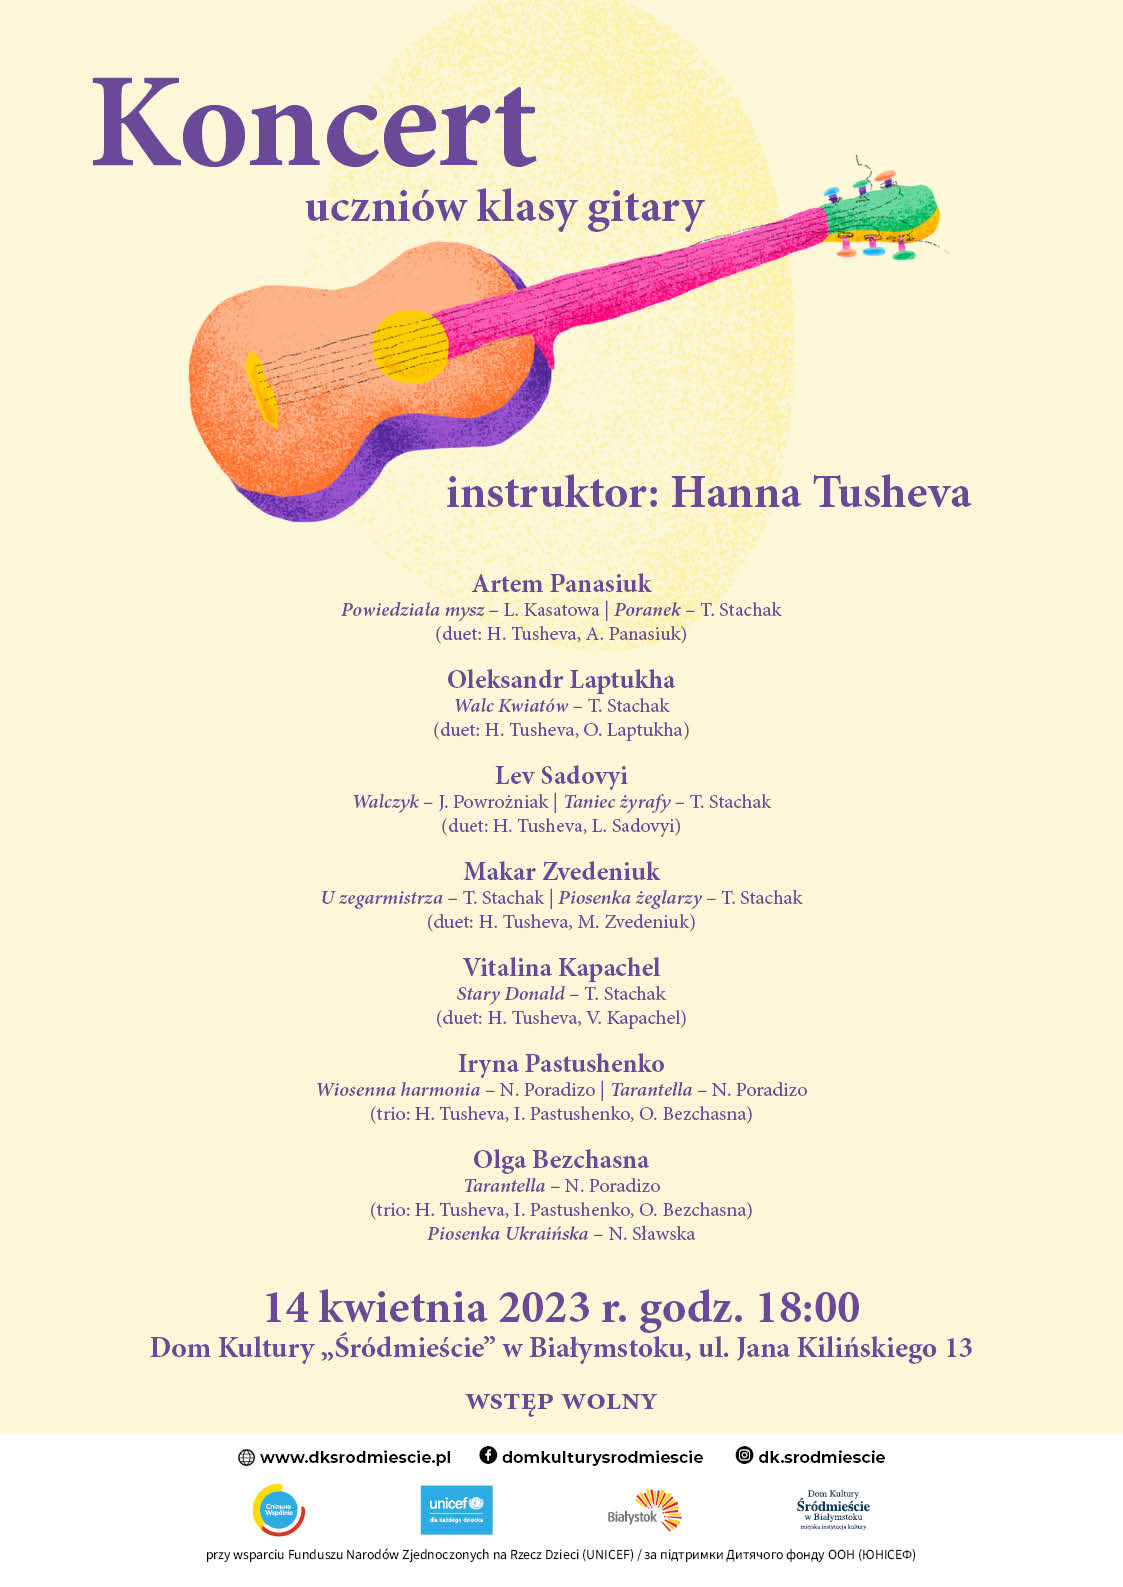 Afisz plakatu koncert klasy gitary Hanny Tushevy